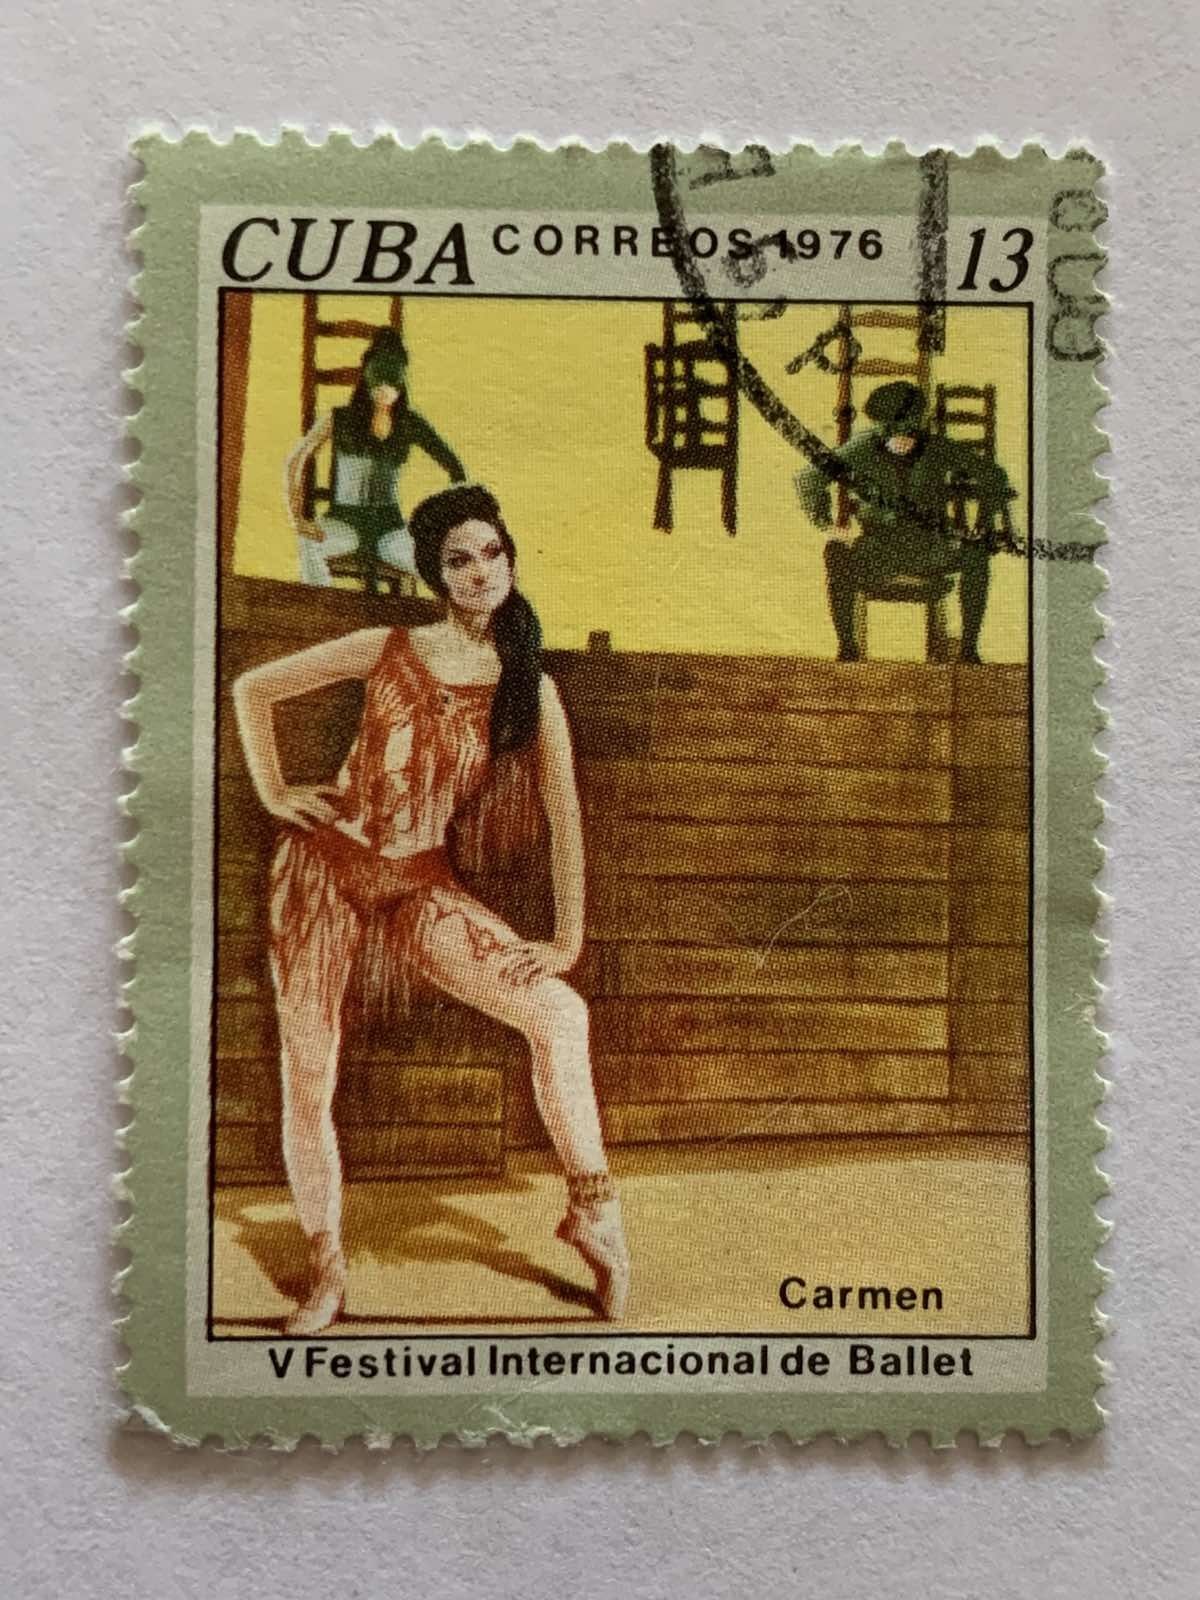 Марки почтовые CUBA correos 1976. Набор 6 шт.